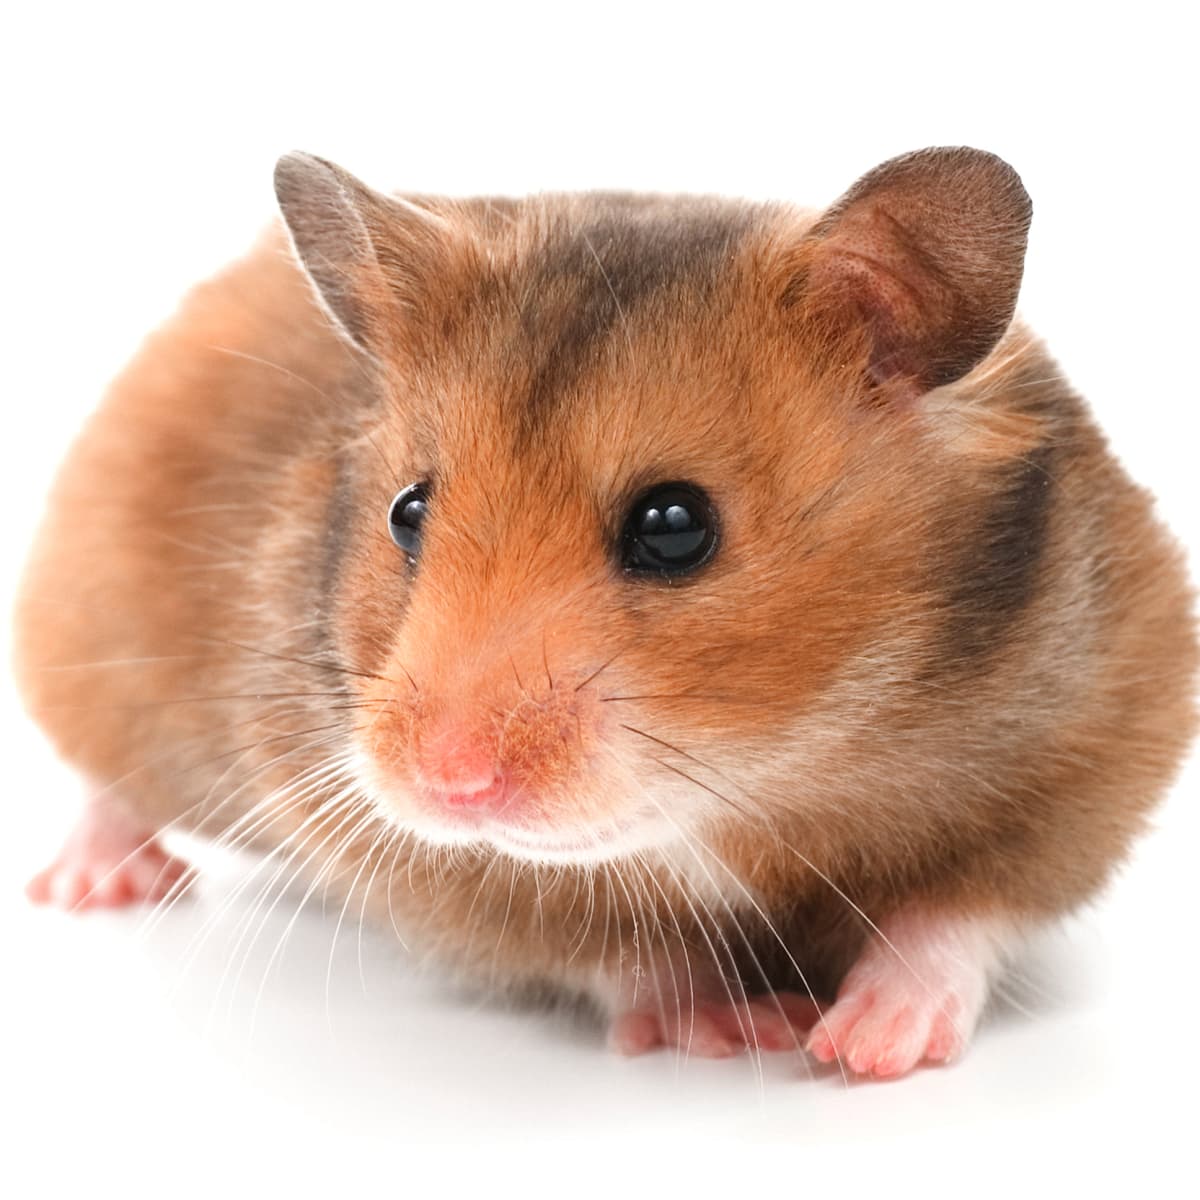 5 Types of Dwarf Hamster Breeds